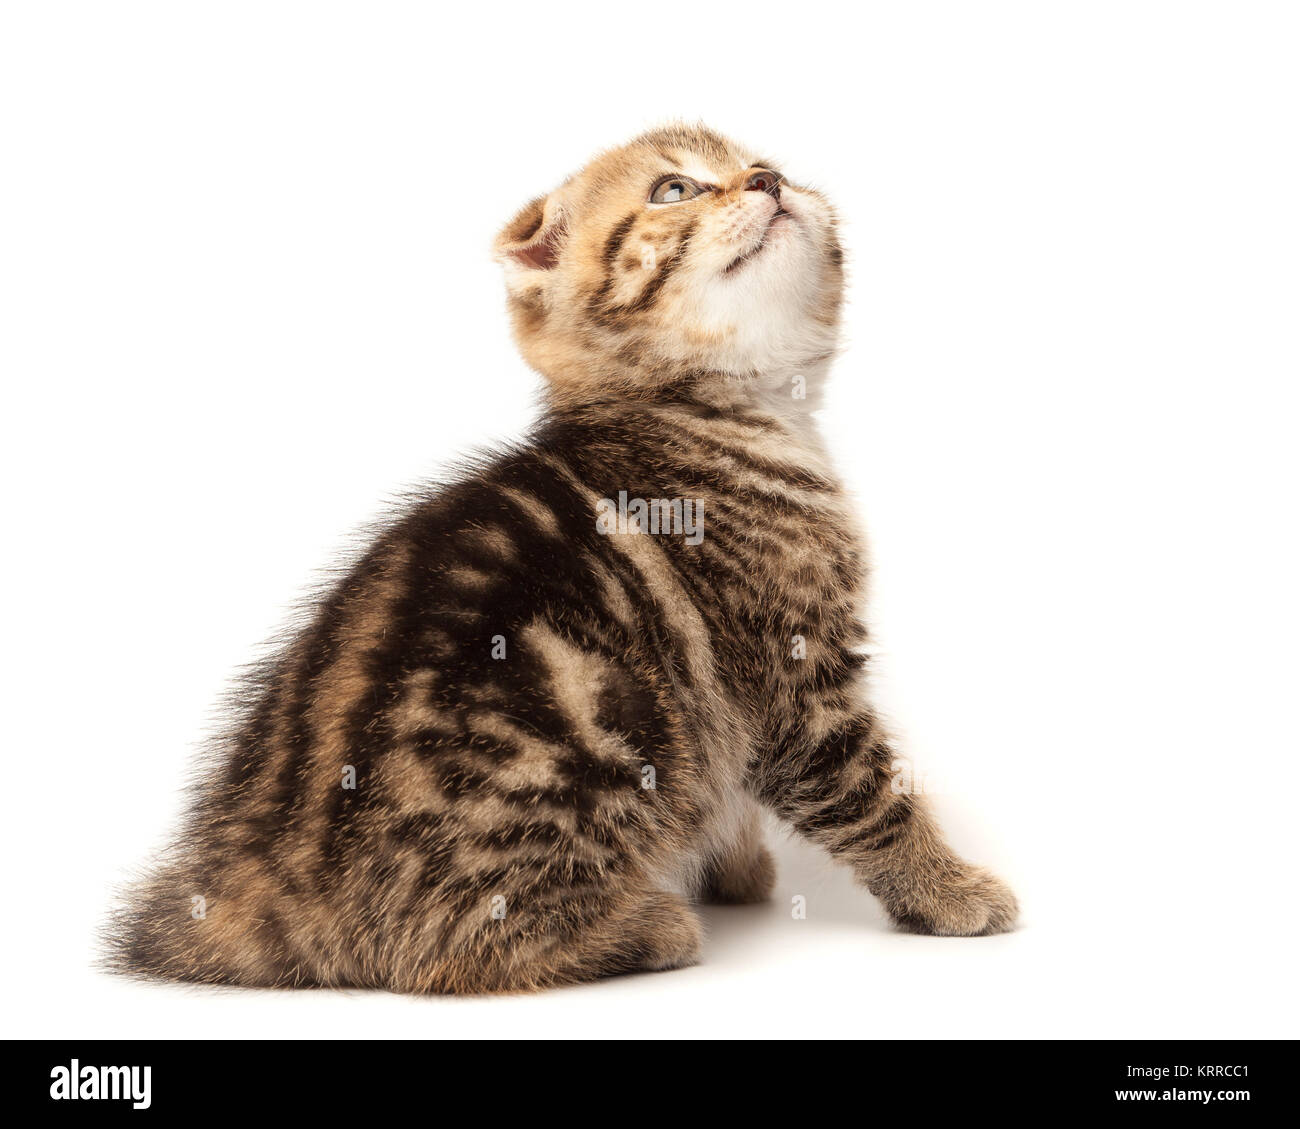 Portrait cat, scottish Fold on white background Stock Photo